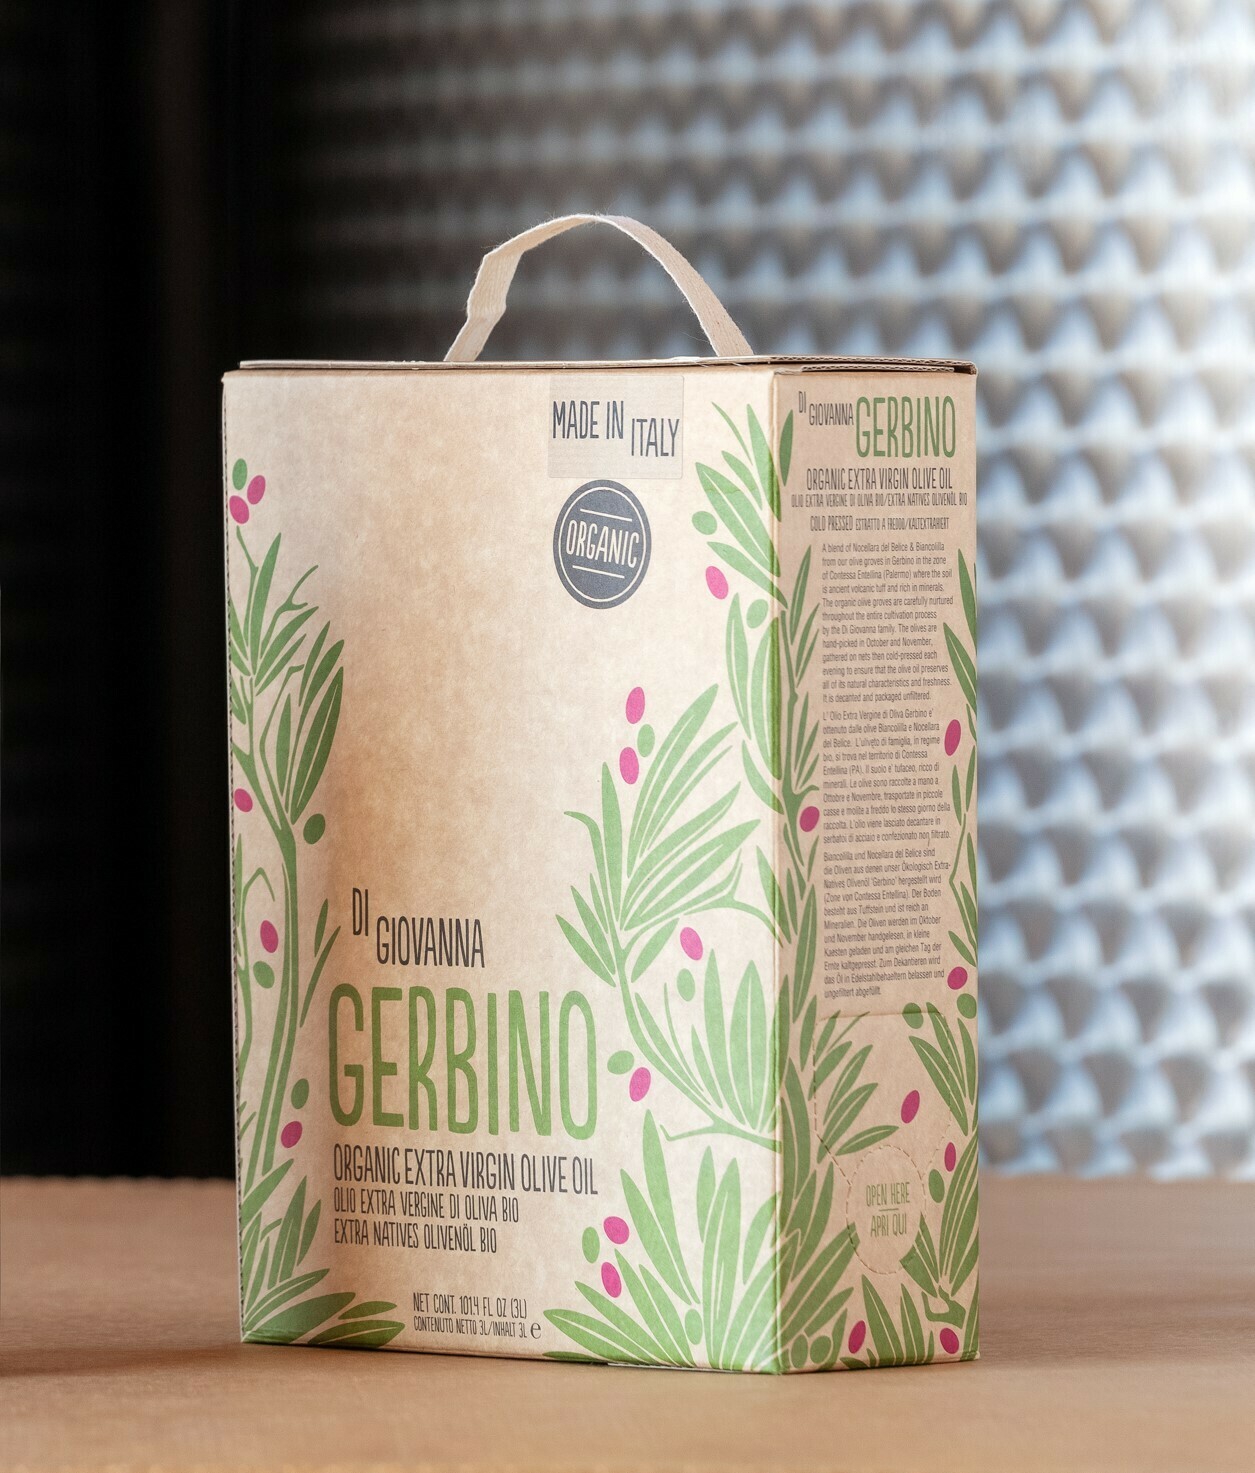 GERBINO Organic Olive Oil - 3 Lt. Bag in Box